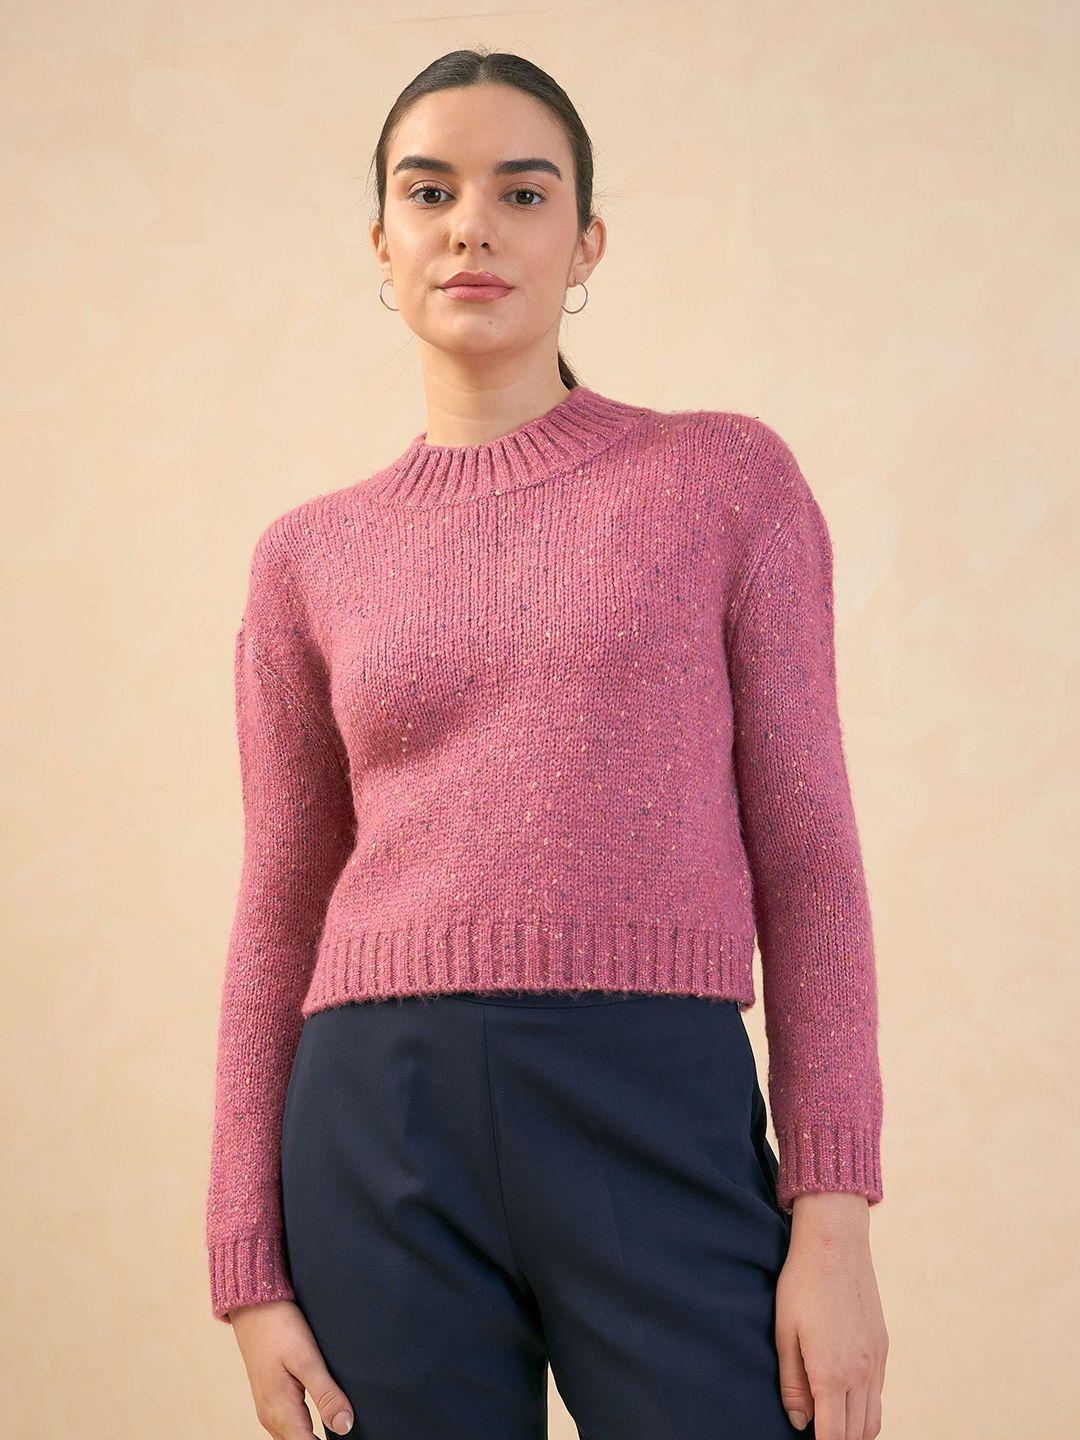 salt attire women pink crop sweater vest